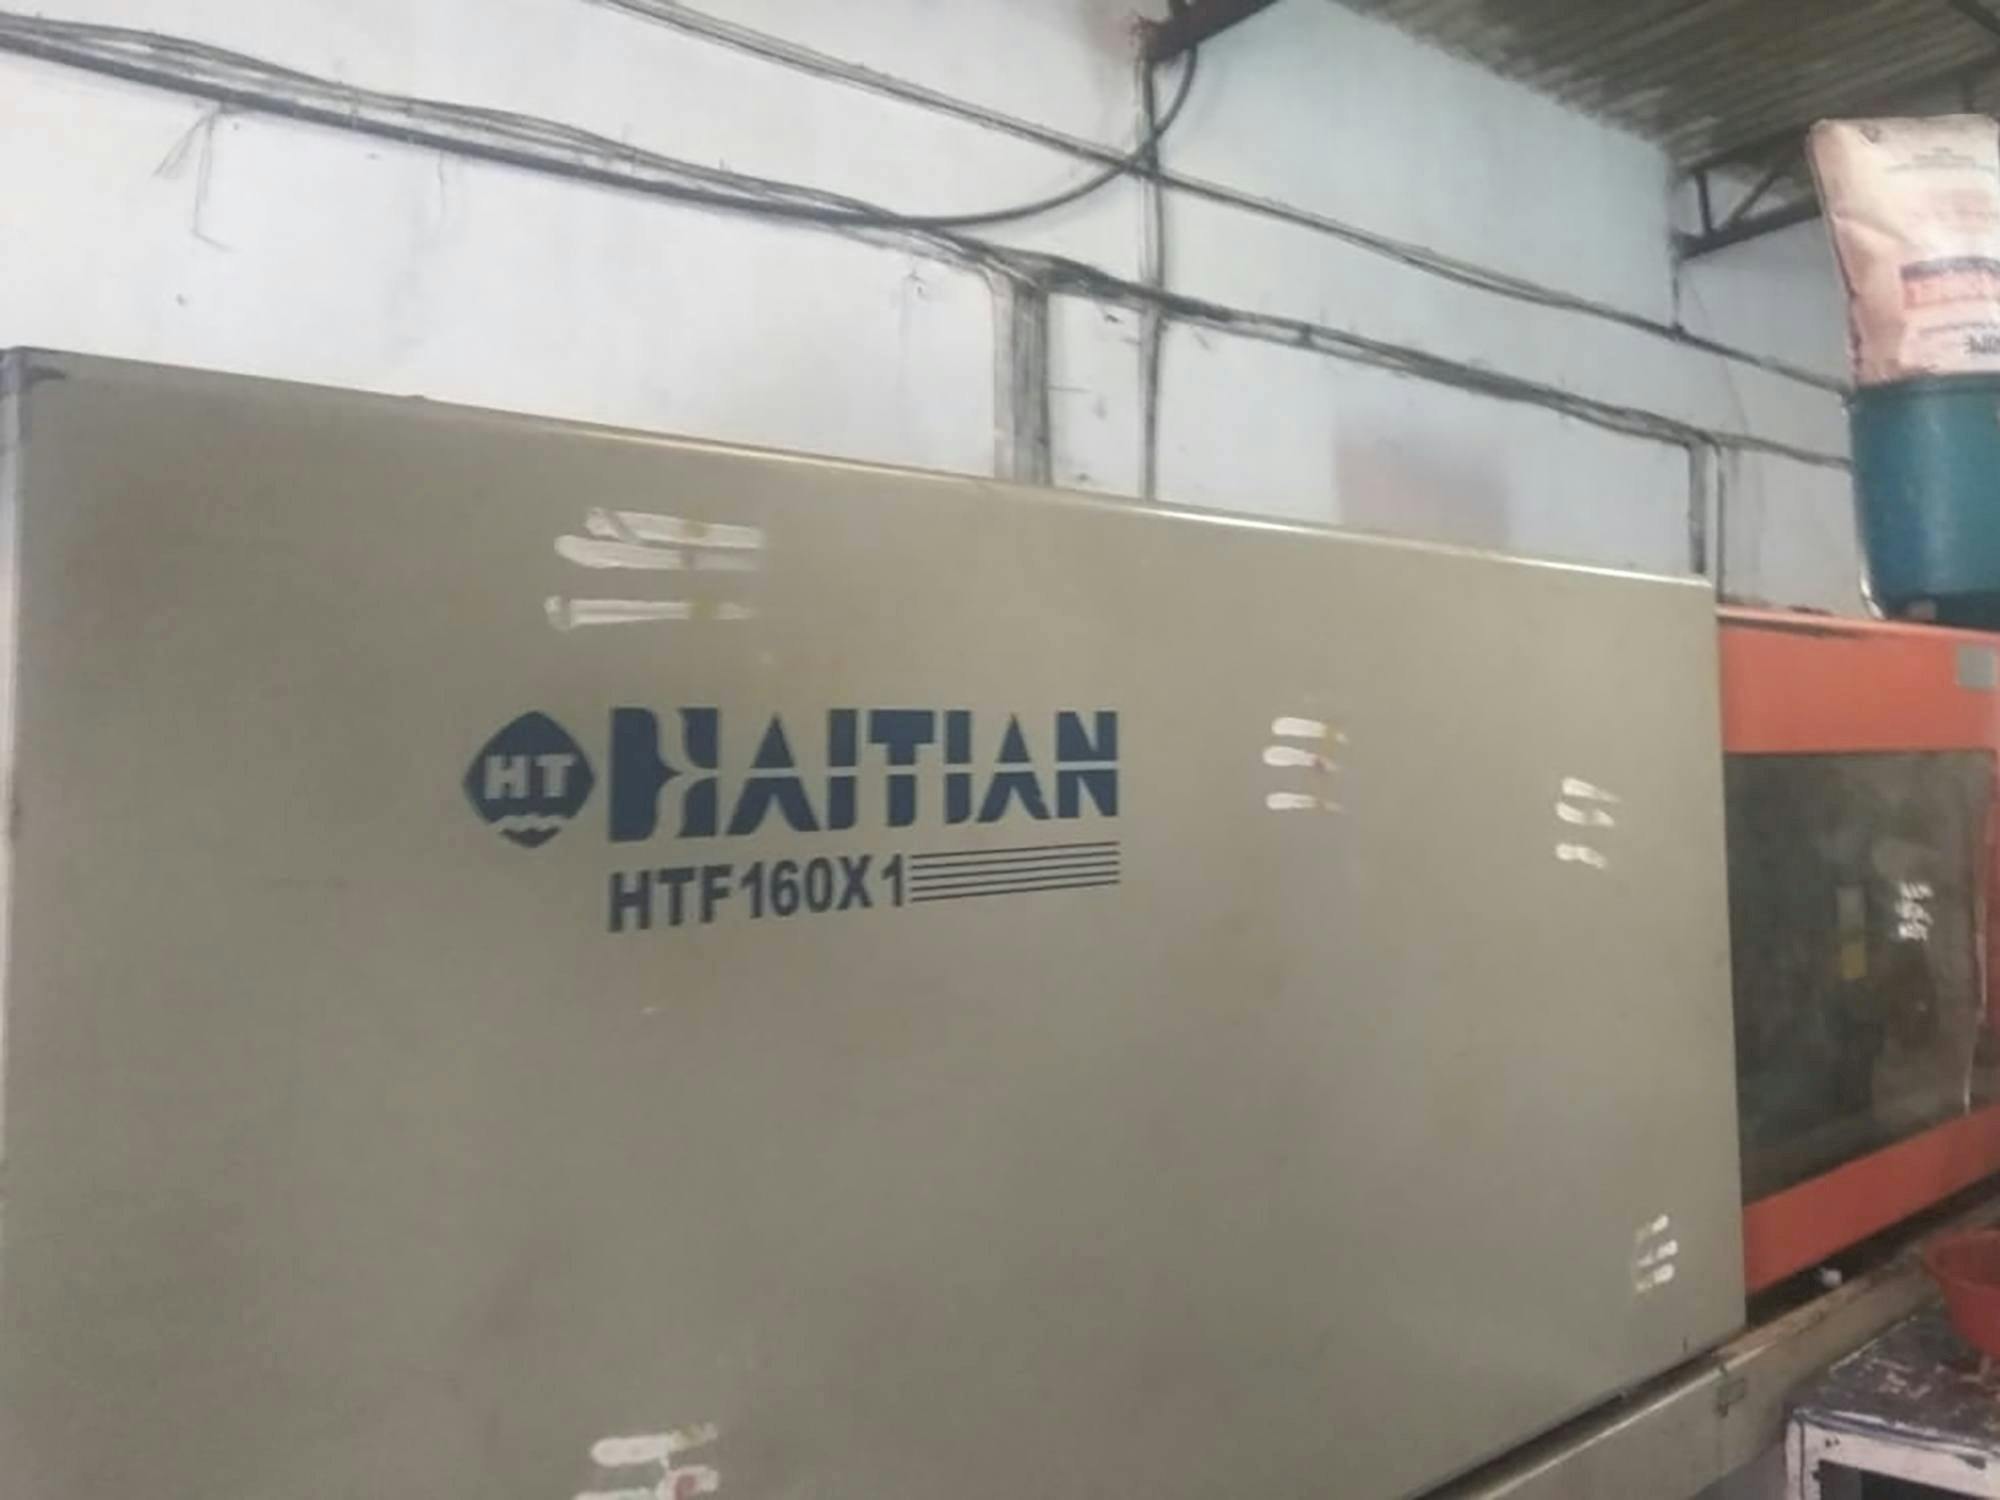 Prikaz  stroja HAITIAN HTF160X1 sprijeda